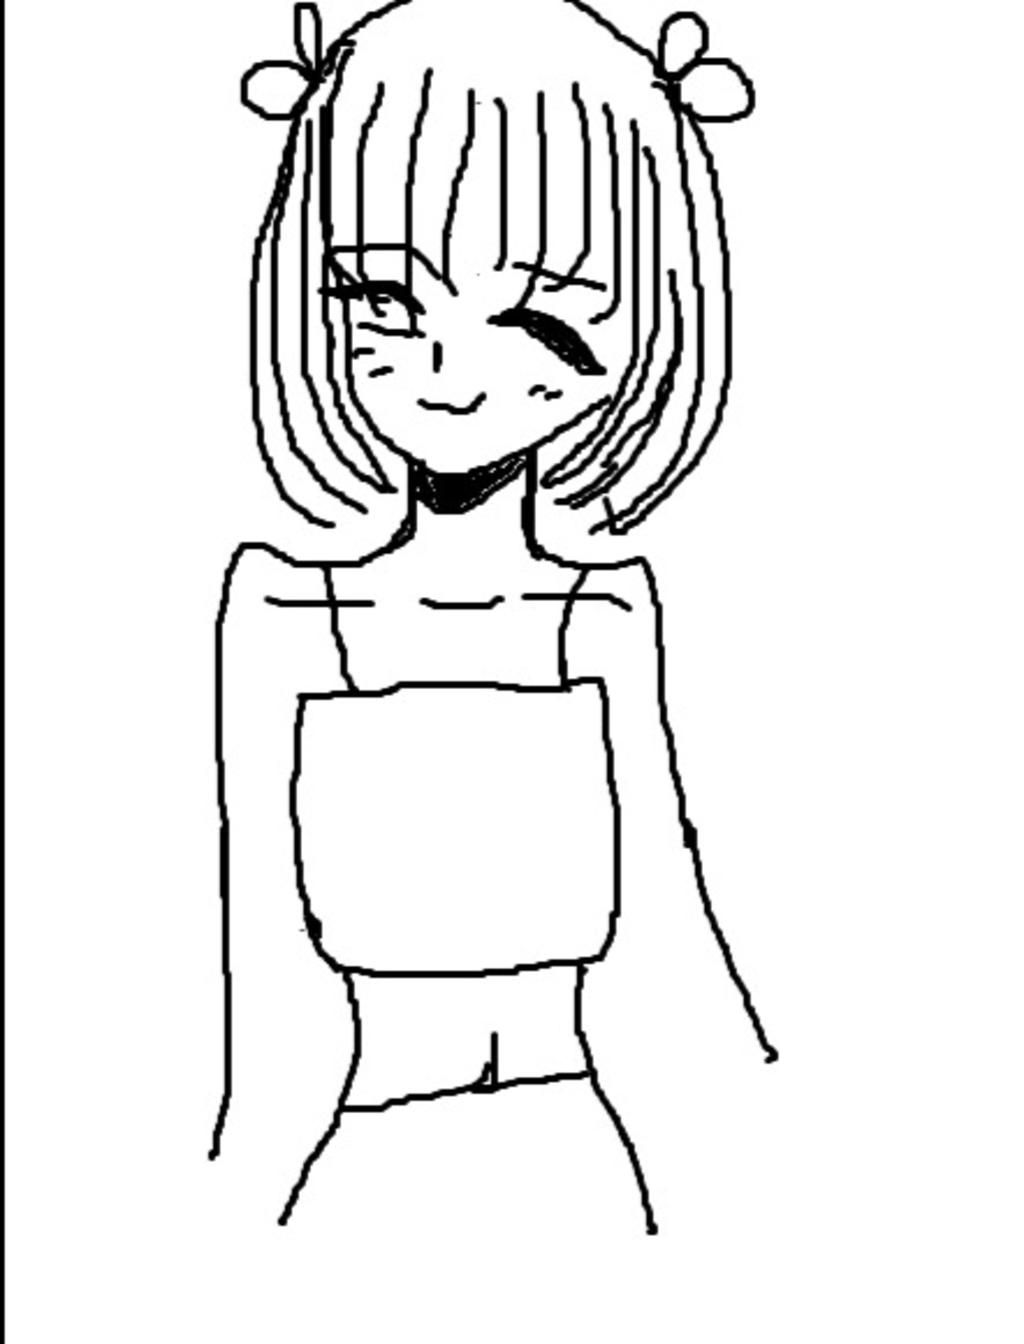 Hướng dẫn vẽ hình anime cute chibi dễ vẽ vô cùng đơn giản và dễ thương